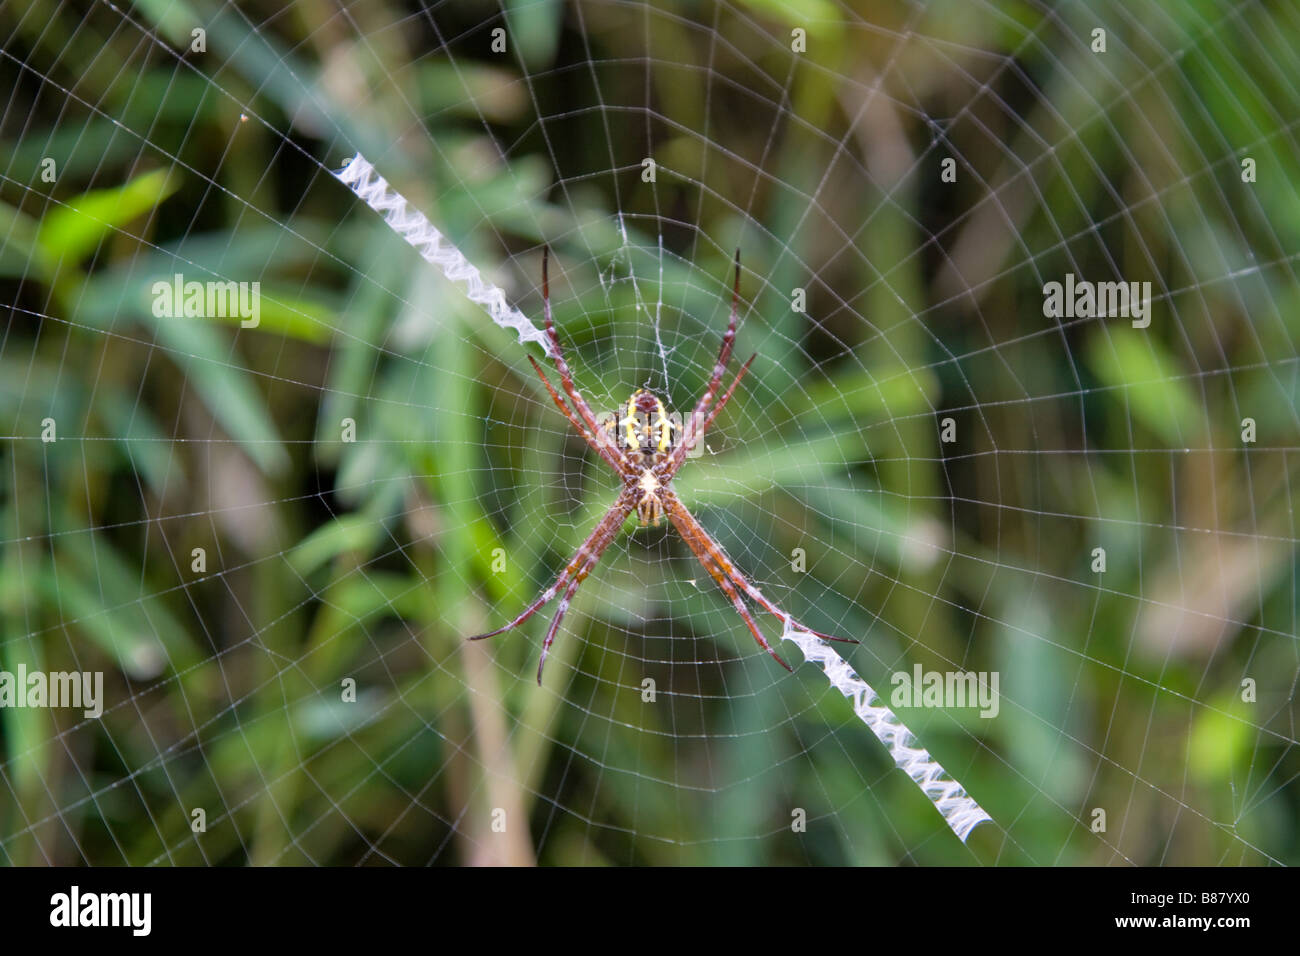 Hembra madura argiope appensa araña en el centro de una red Foto de stock